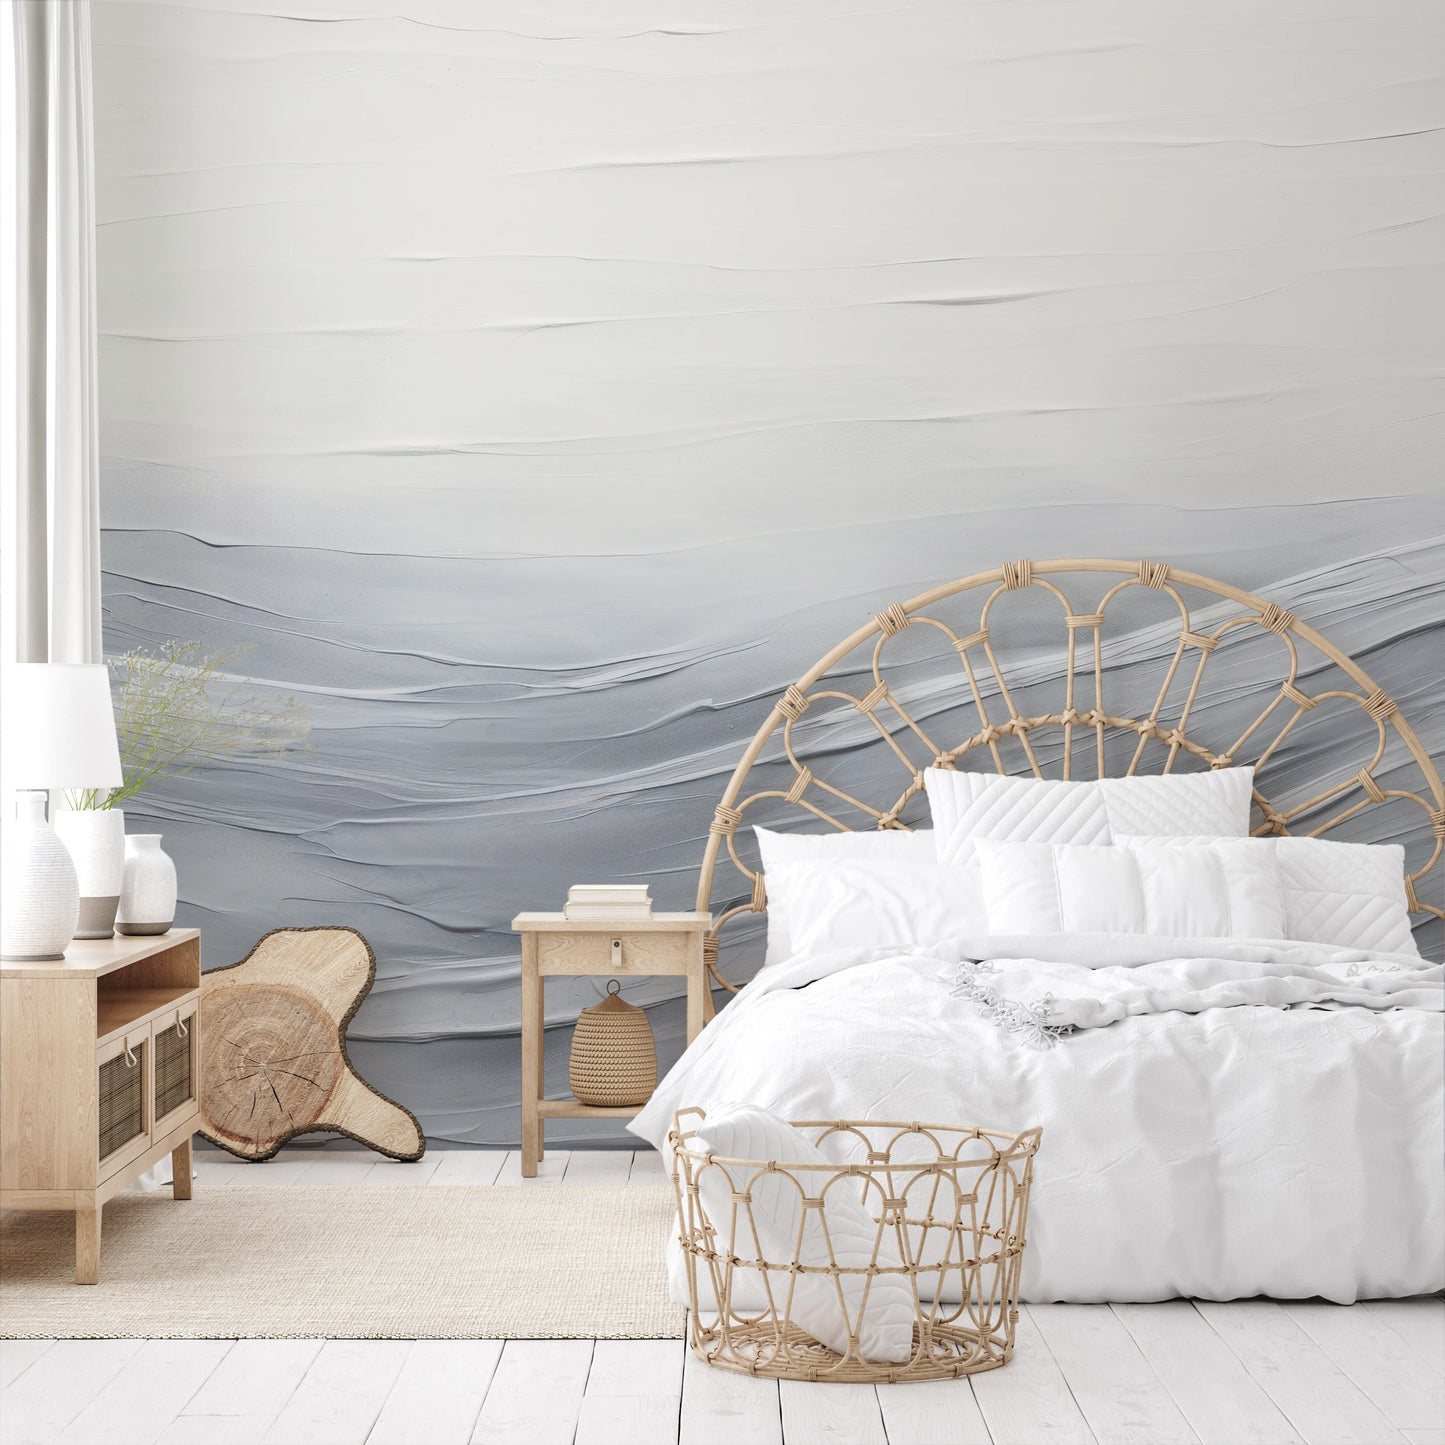 Fototapeta malowana o nazwie Serenity Waves pokazana w aranżacji wnętrza.